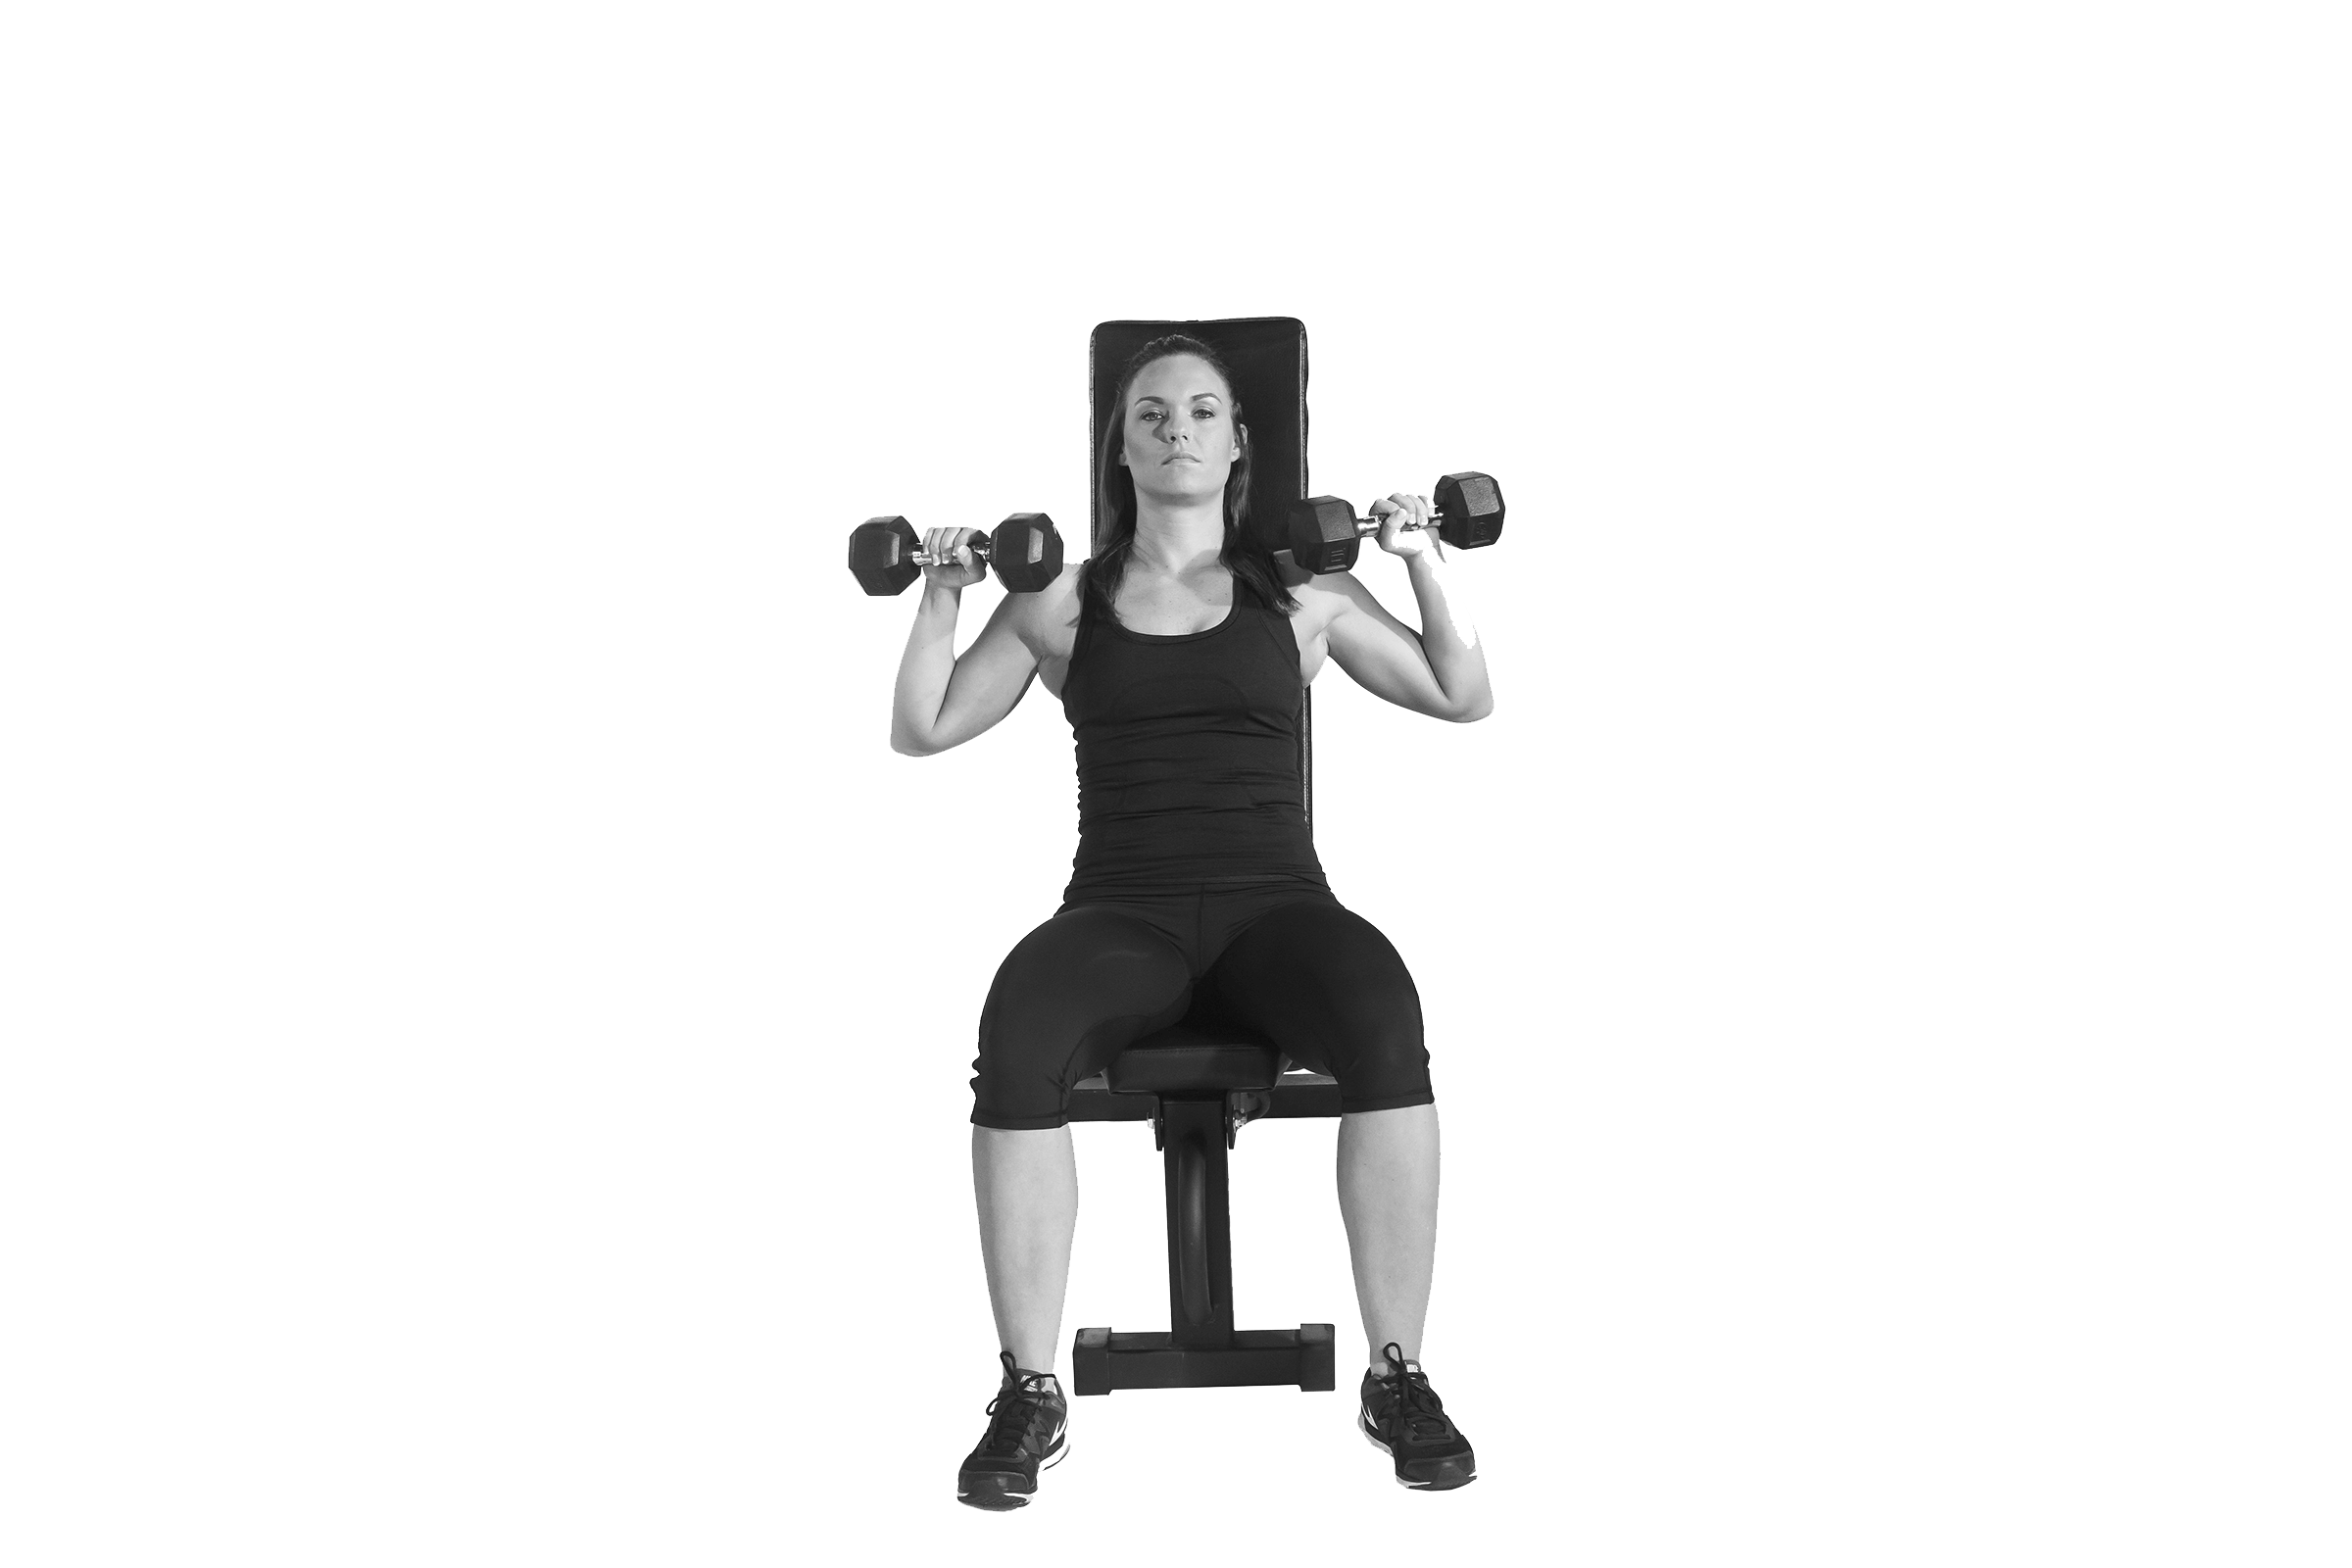 Le dvelopp assis fait partie des exercices recommands pour muscler le haut du corps.